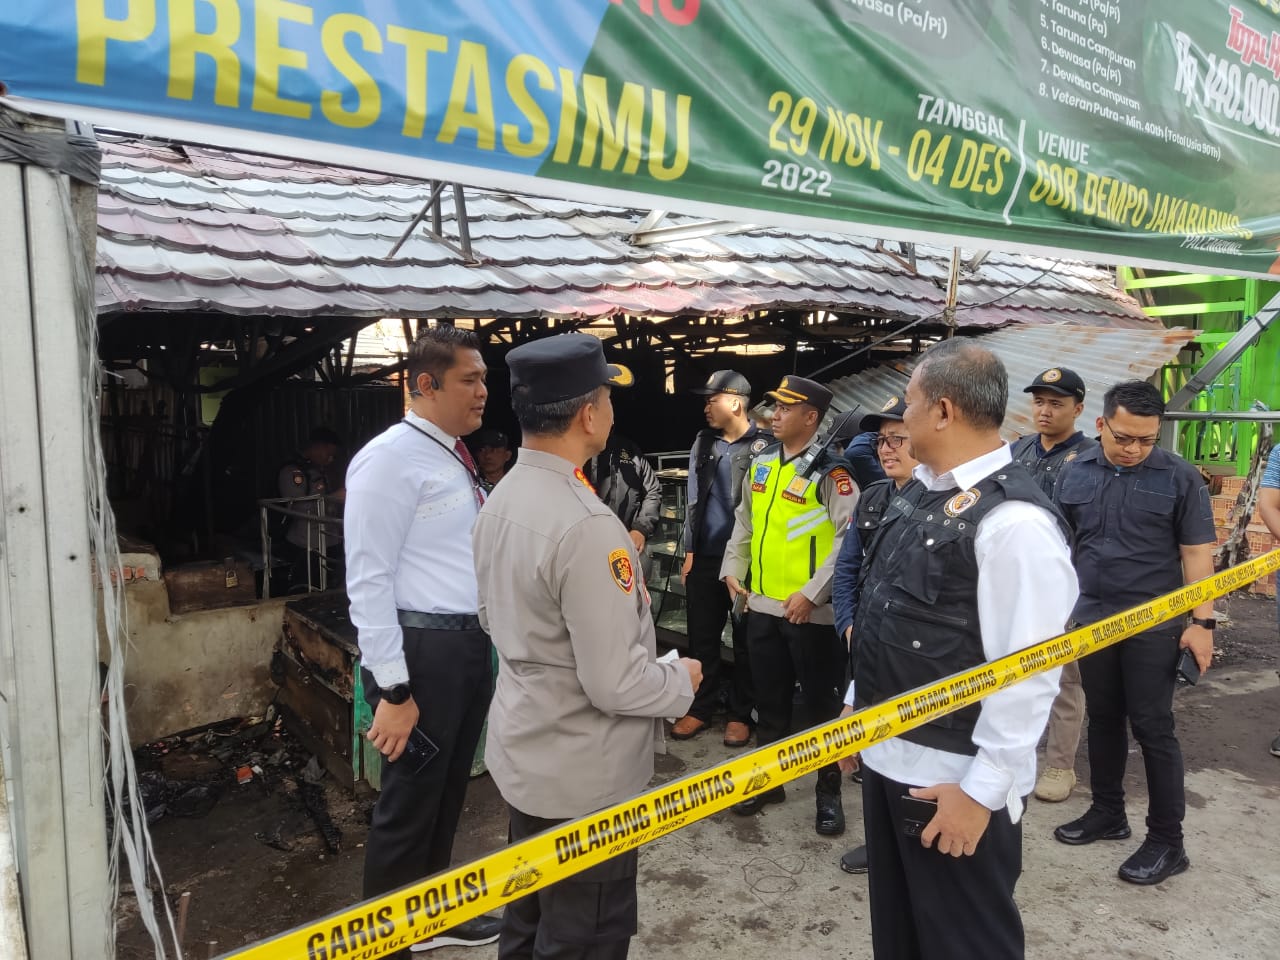 60 Kios Pasar Cinde Palembang Terbakar, Kapolrestabes: Korsleting Kabel di Luar Kios